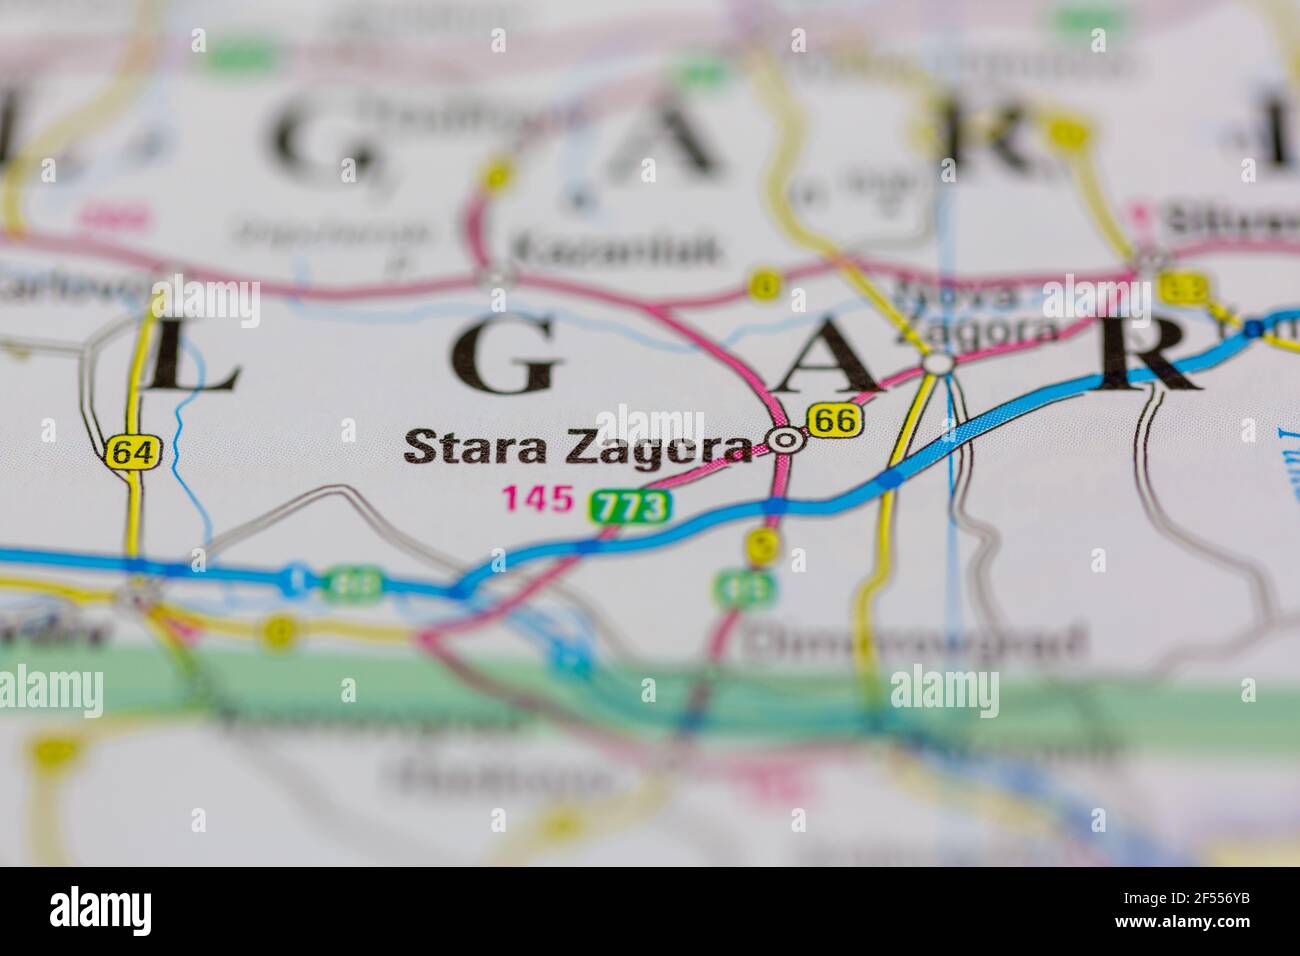 Stara Zagora wird auf einer Geografie- oder Straßenkarte angezeigt Stockfoto